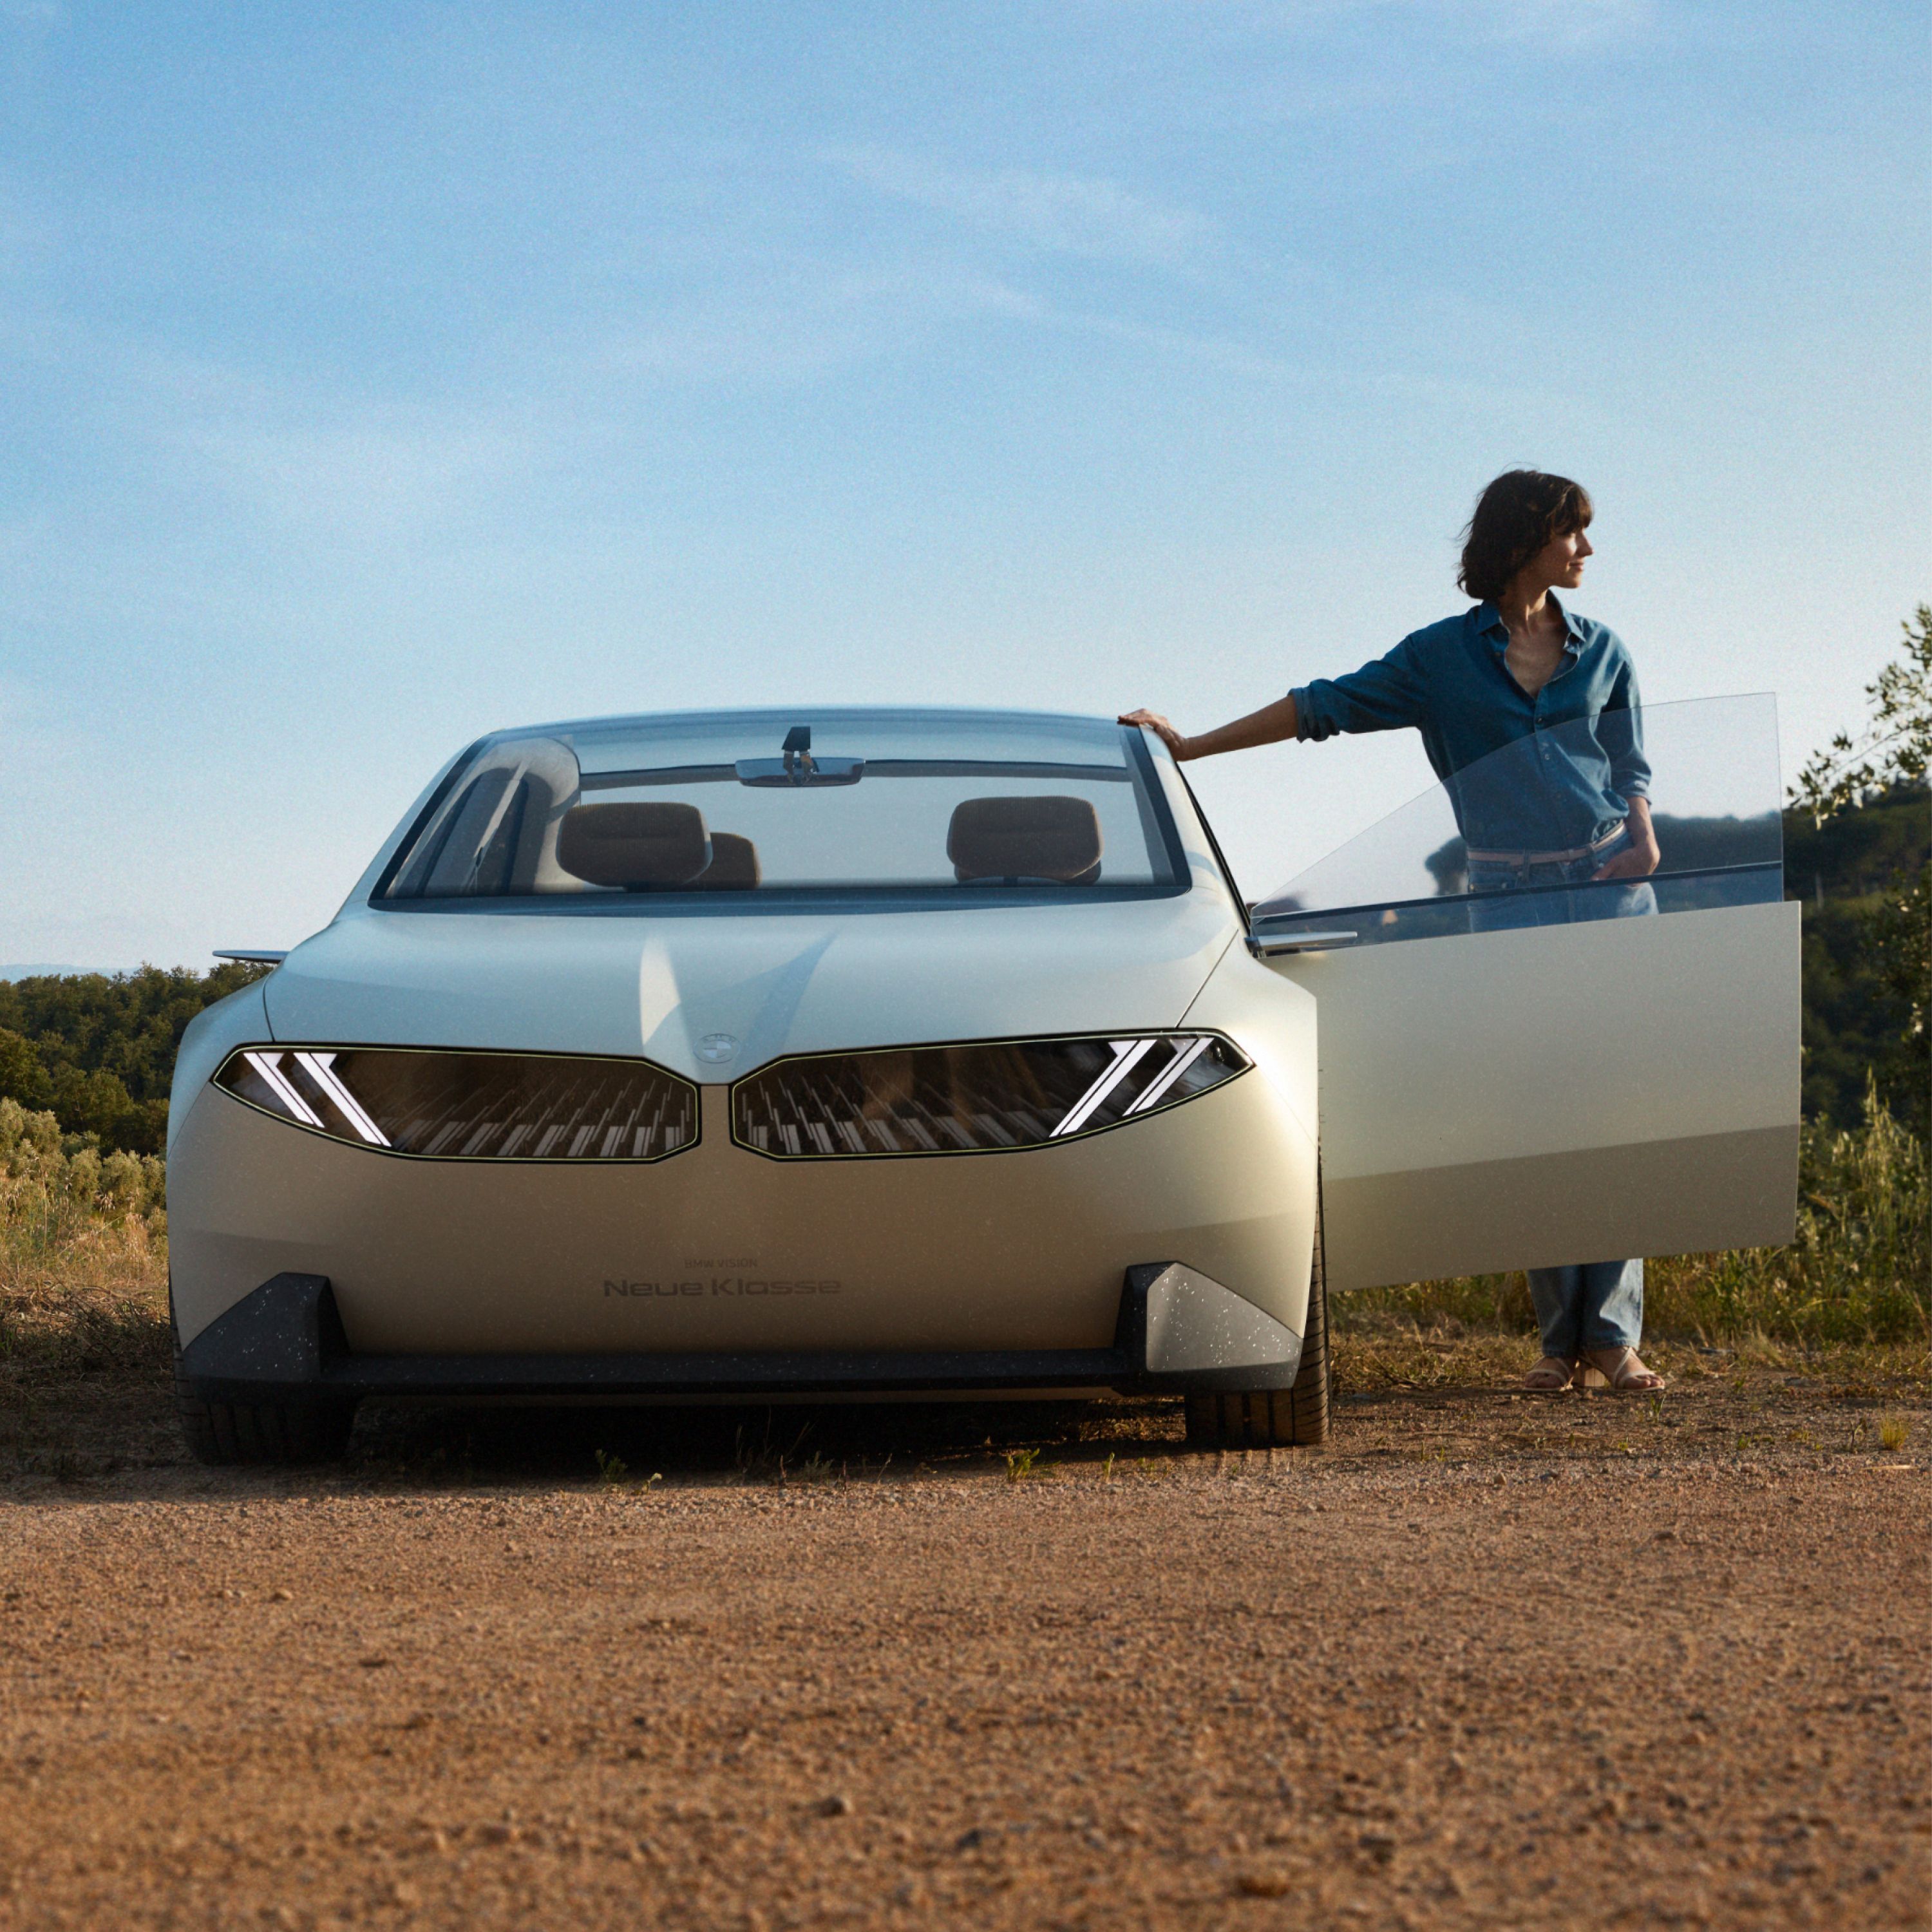  BMW Vision Neue Klasse carro conceito 2023, exterior, vista frontal, estacionamento no deserto, porta aberta, com mulher